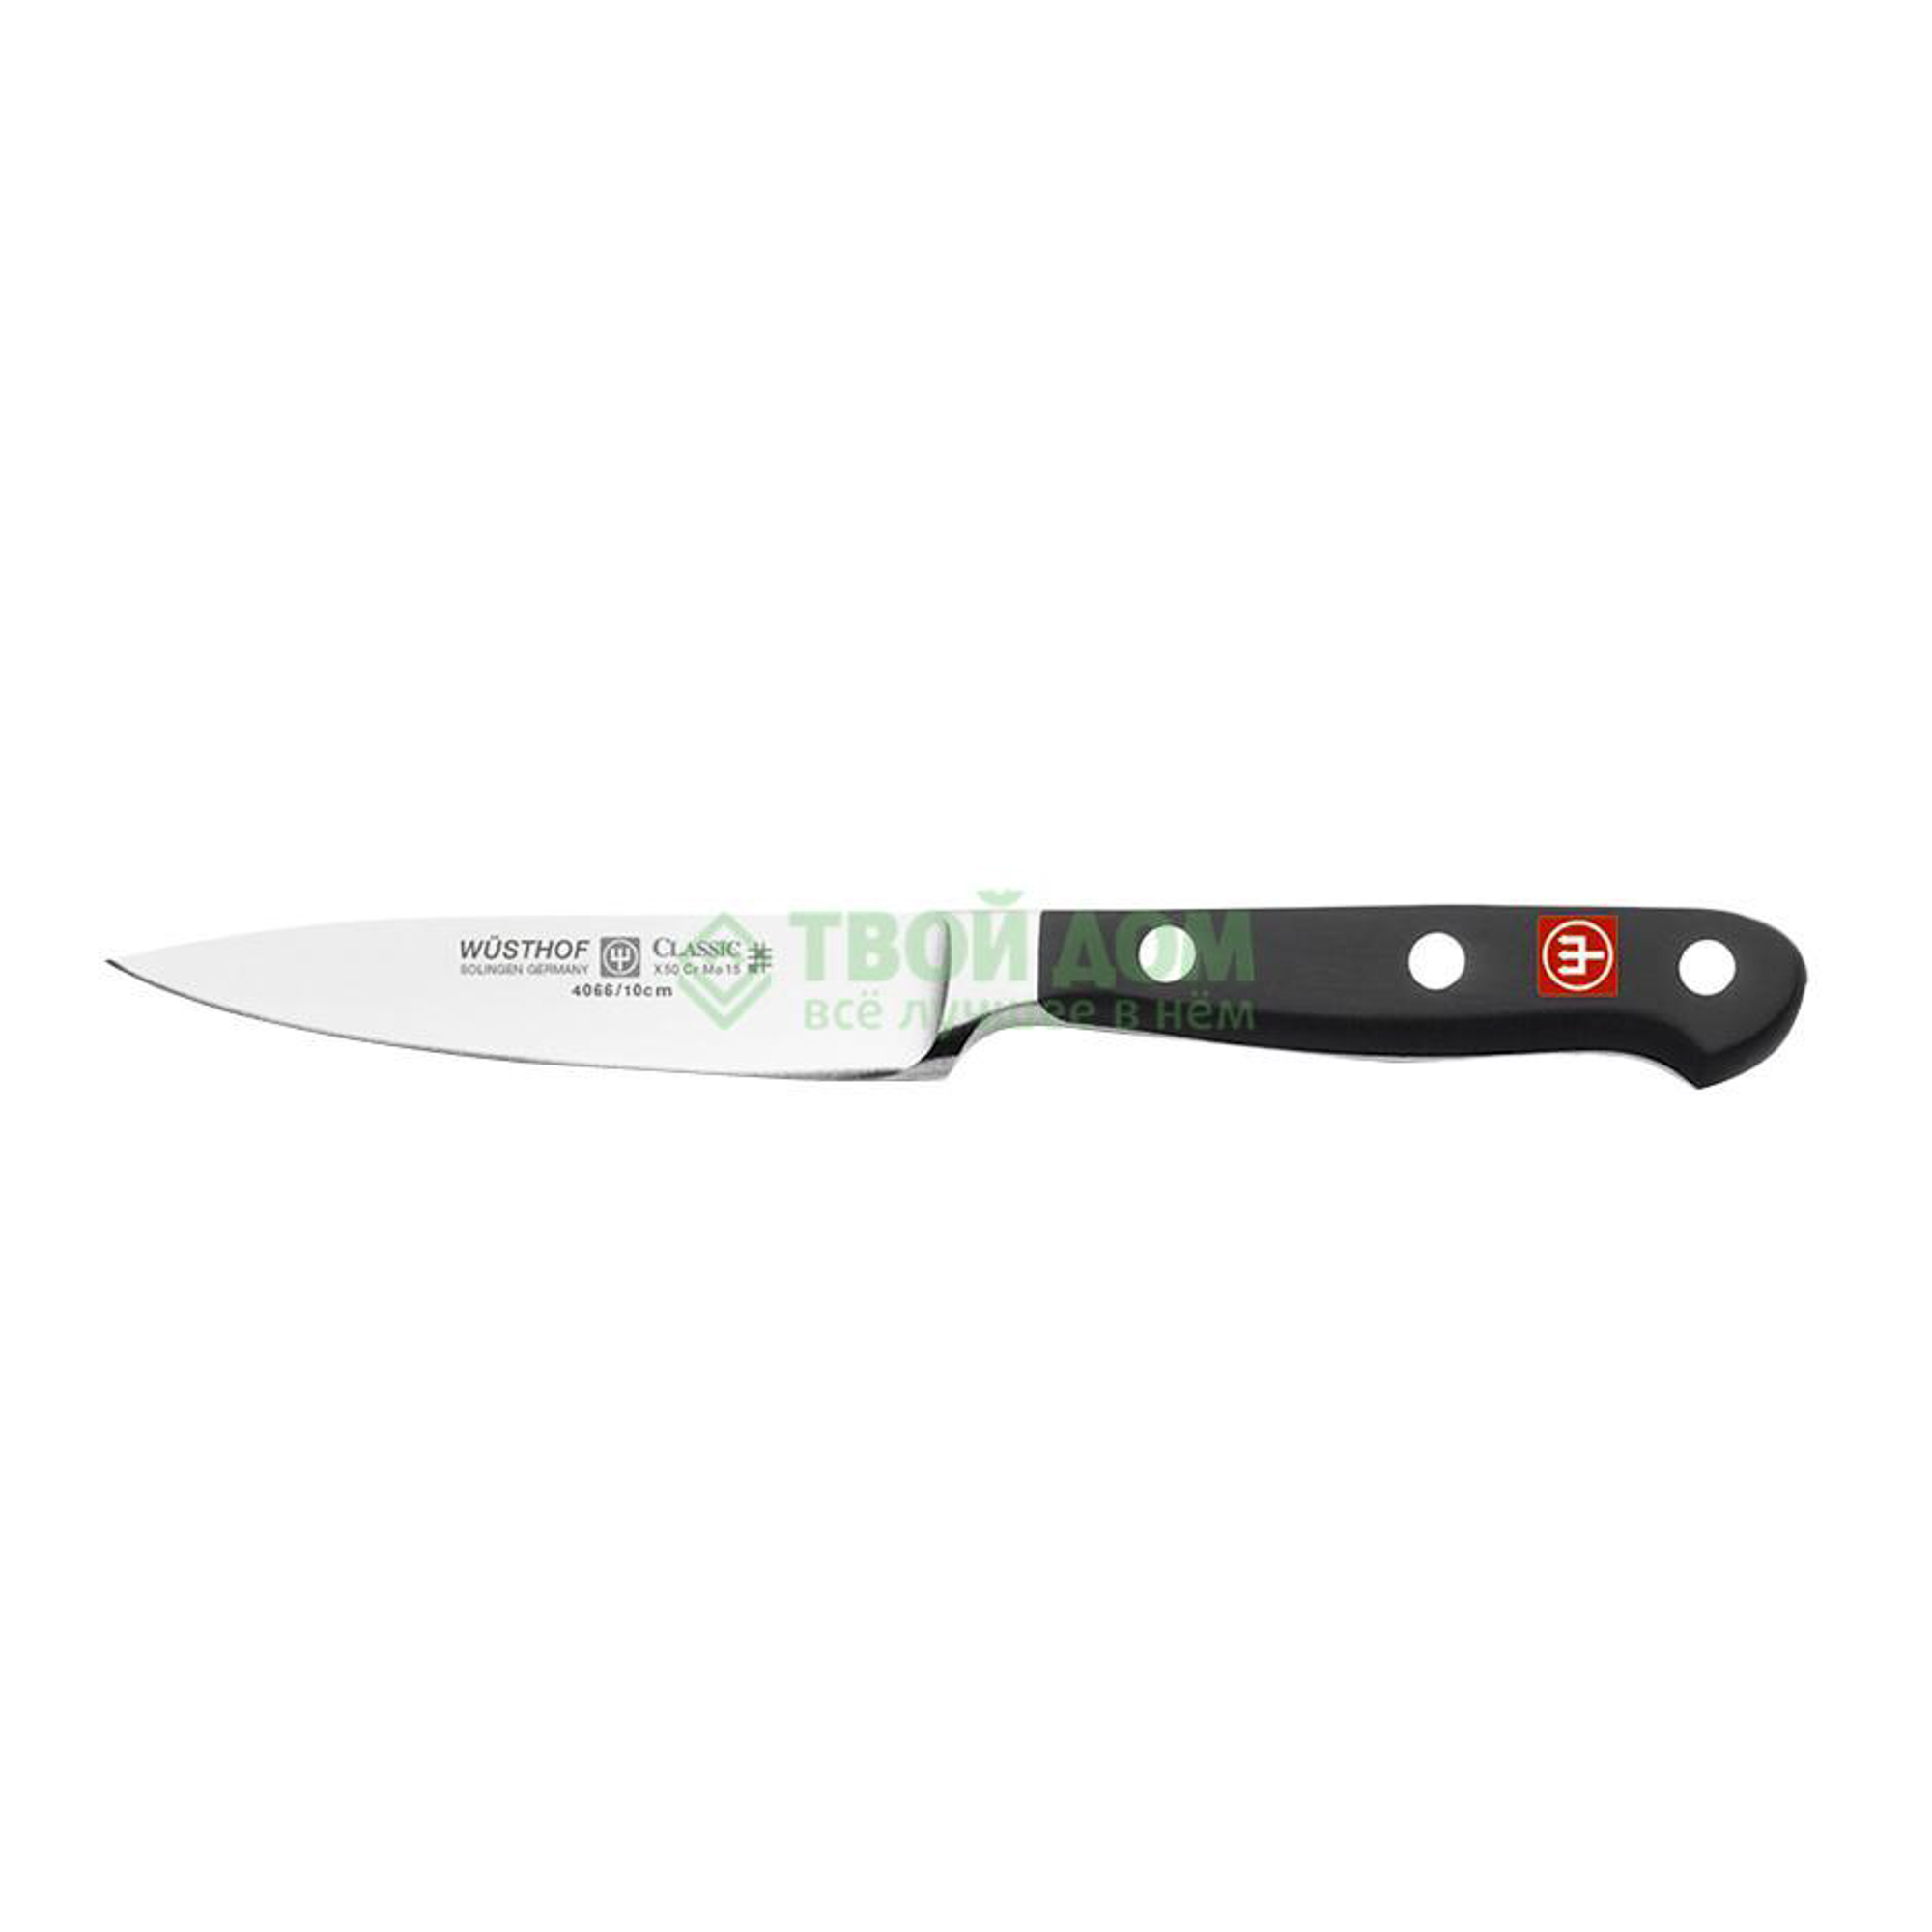 Нож овощной Wusthoff Нож кухонный овощной 10 см classic (4066/10), цвет черный - фото 1